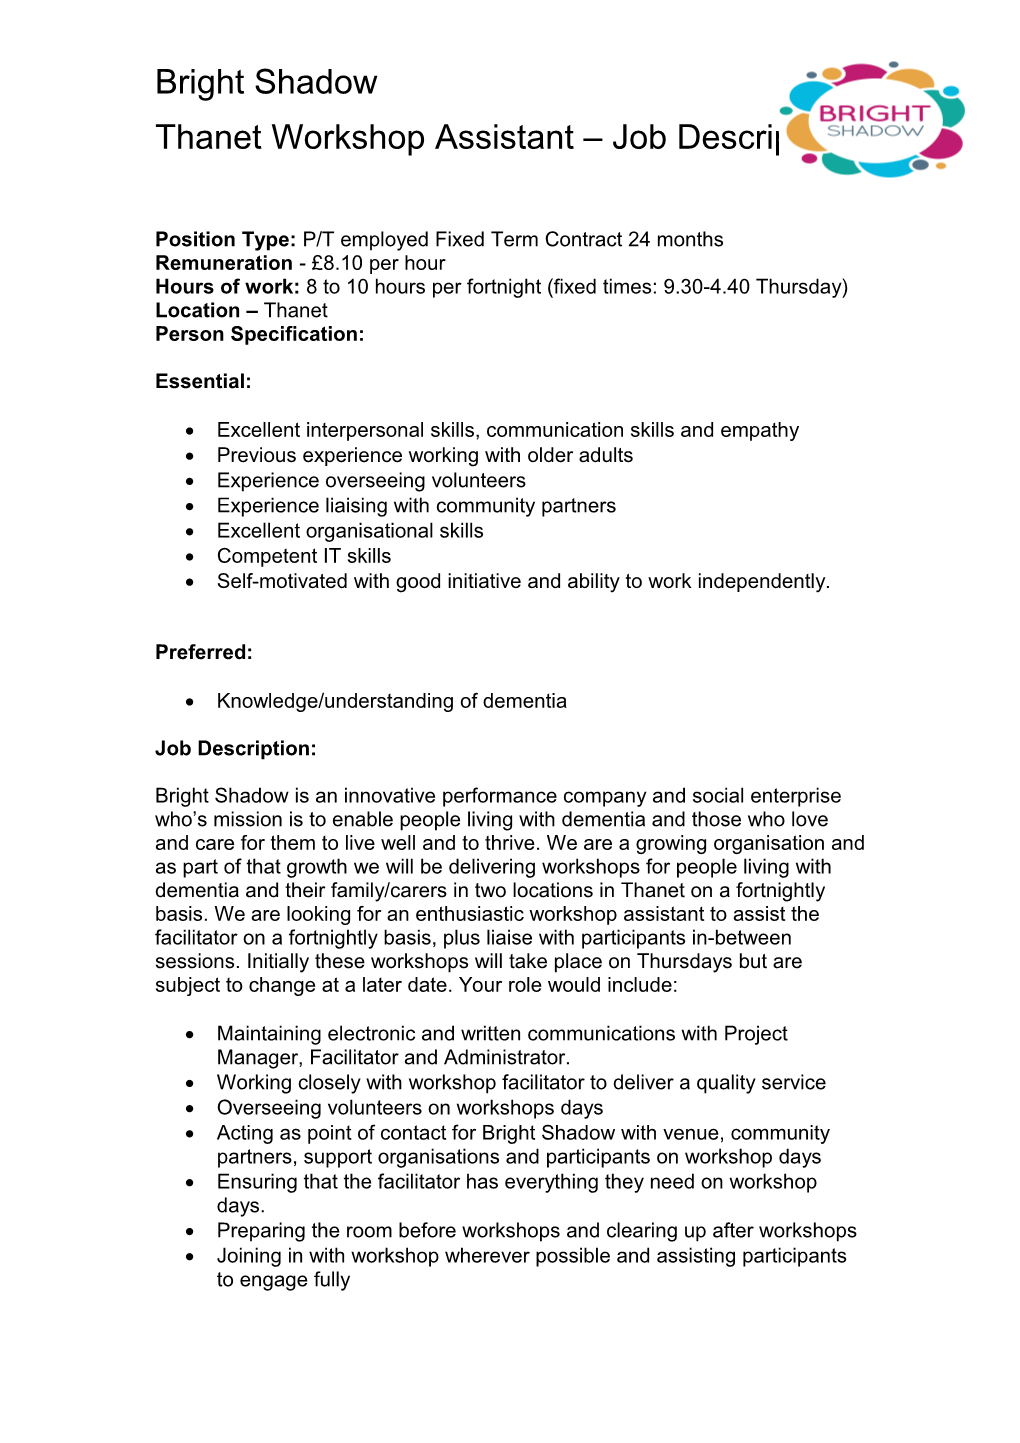 Thanet Workshop Assistant Job Description